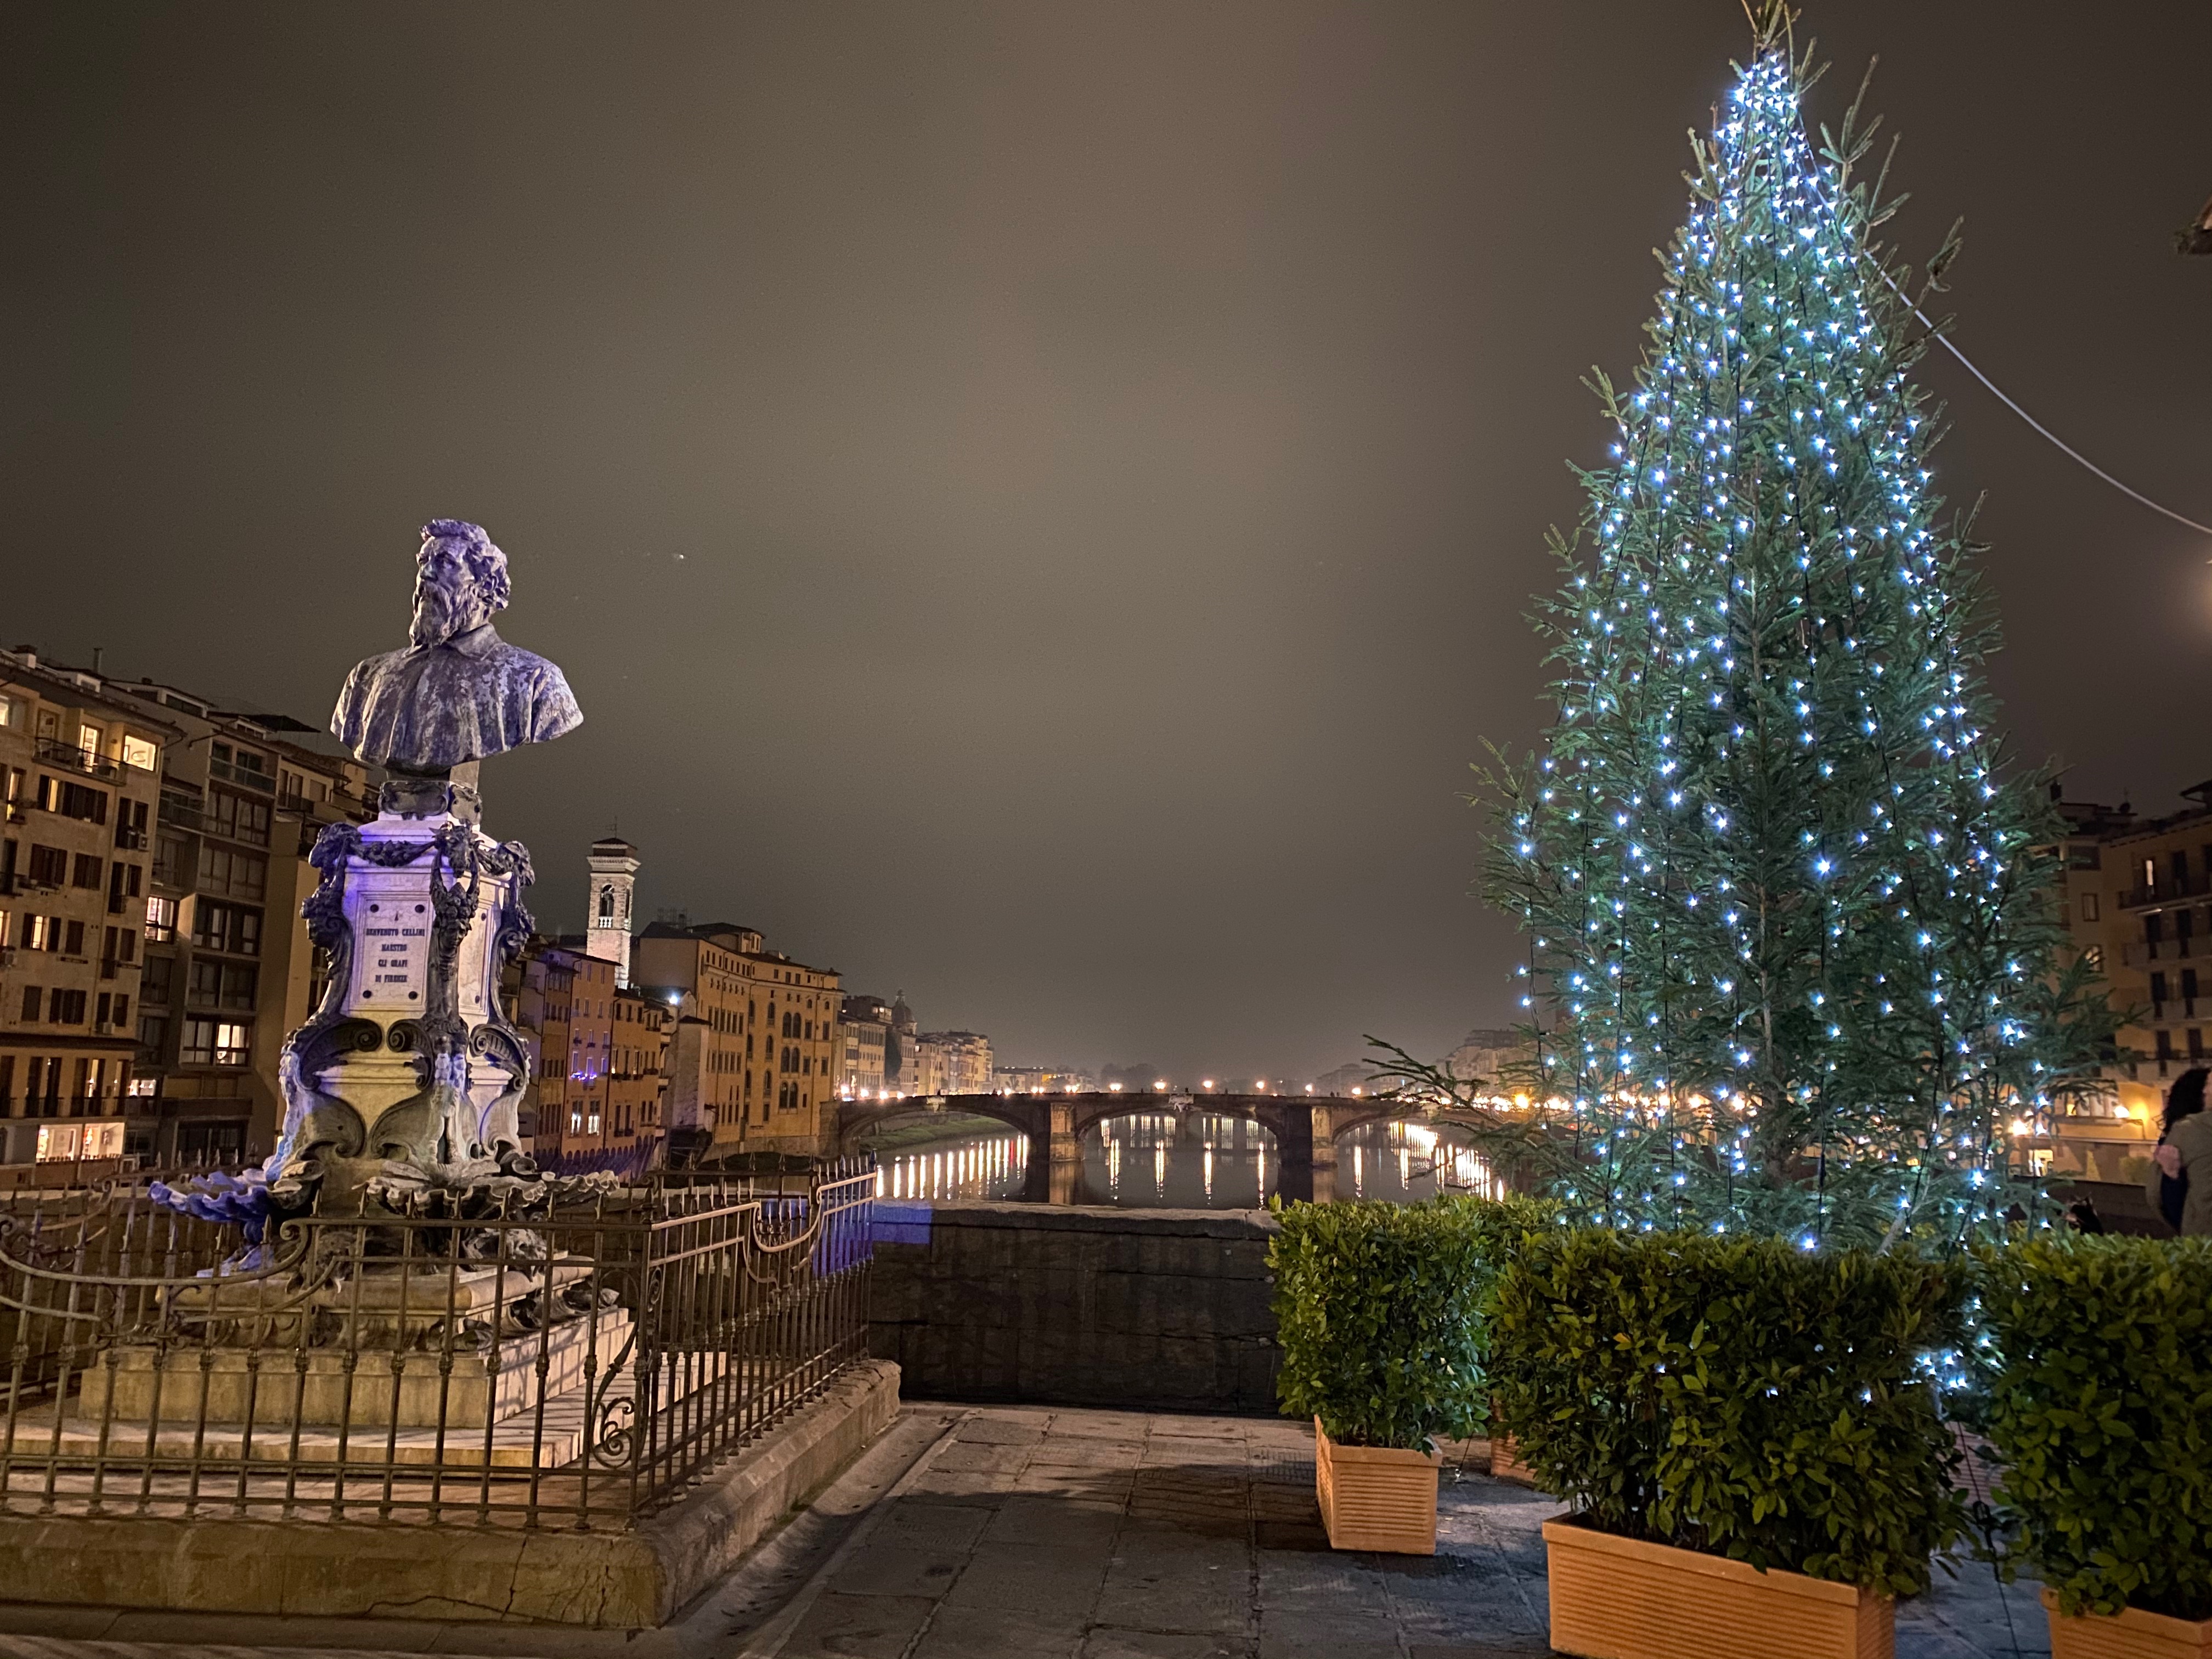 The statue of Benvenuto Cellini on the Ponte Vecchio